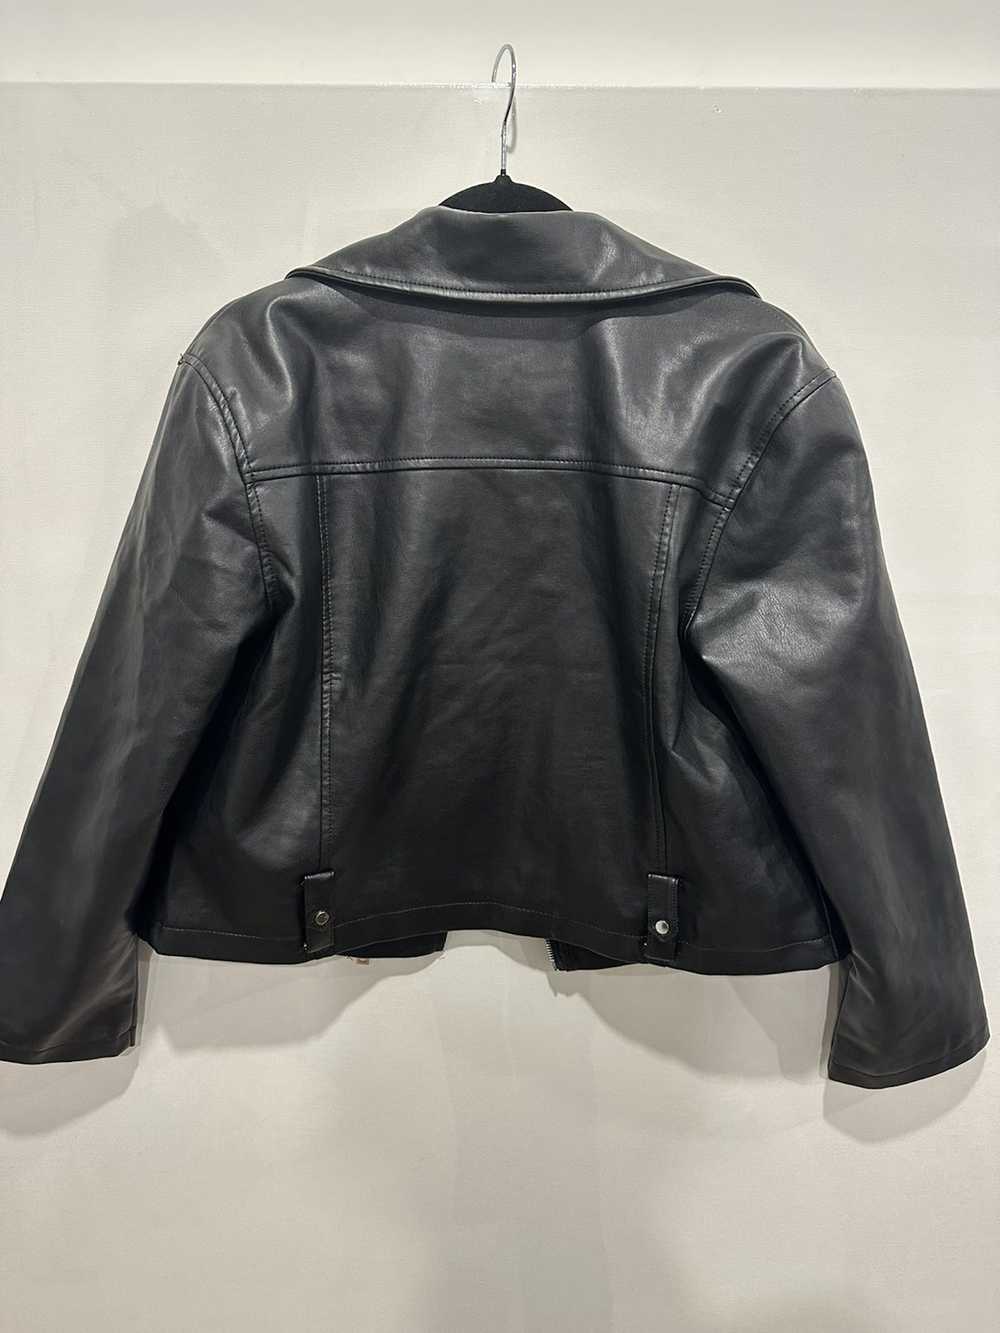 Urban Faux Leather Jacket - image 3